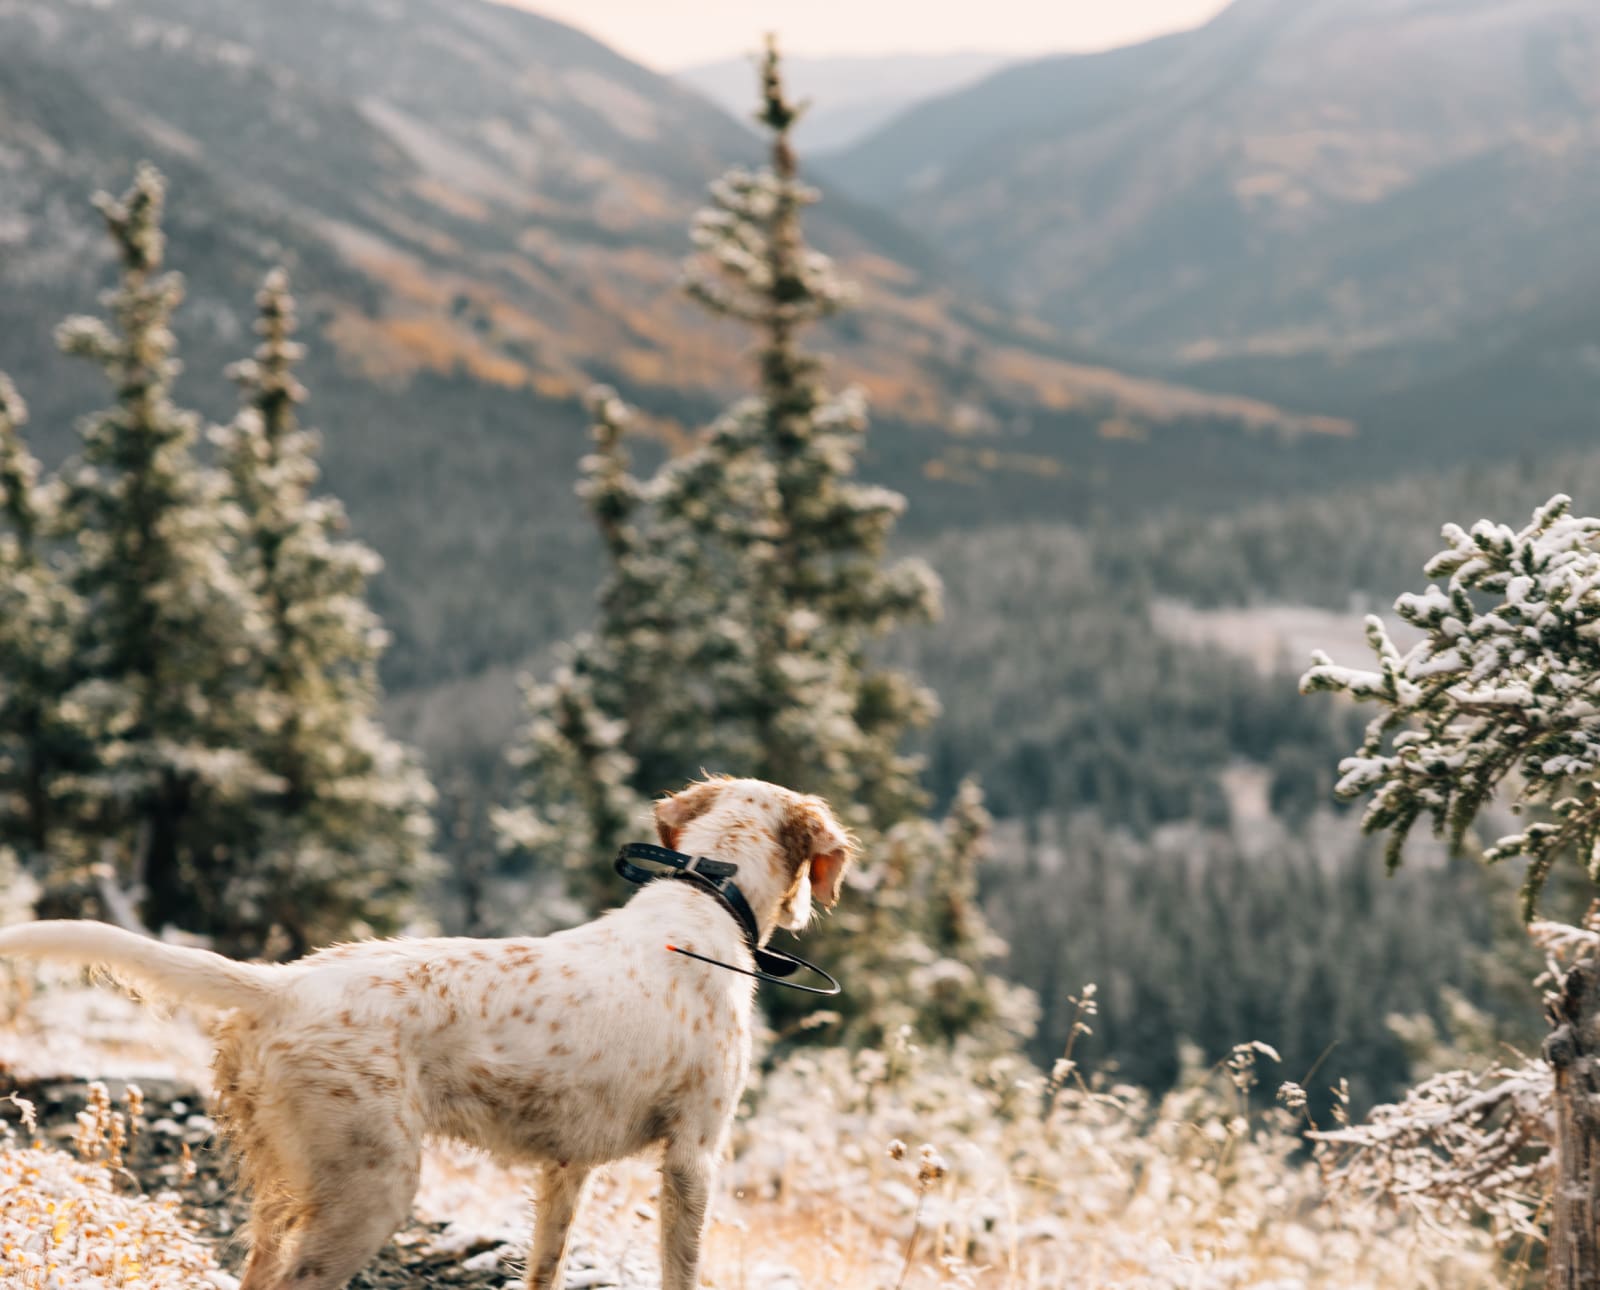 A bird dog in the mountains of Colorado